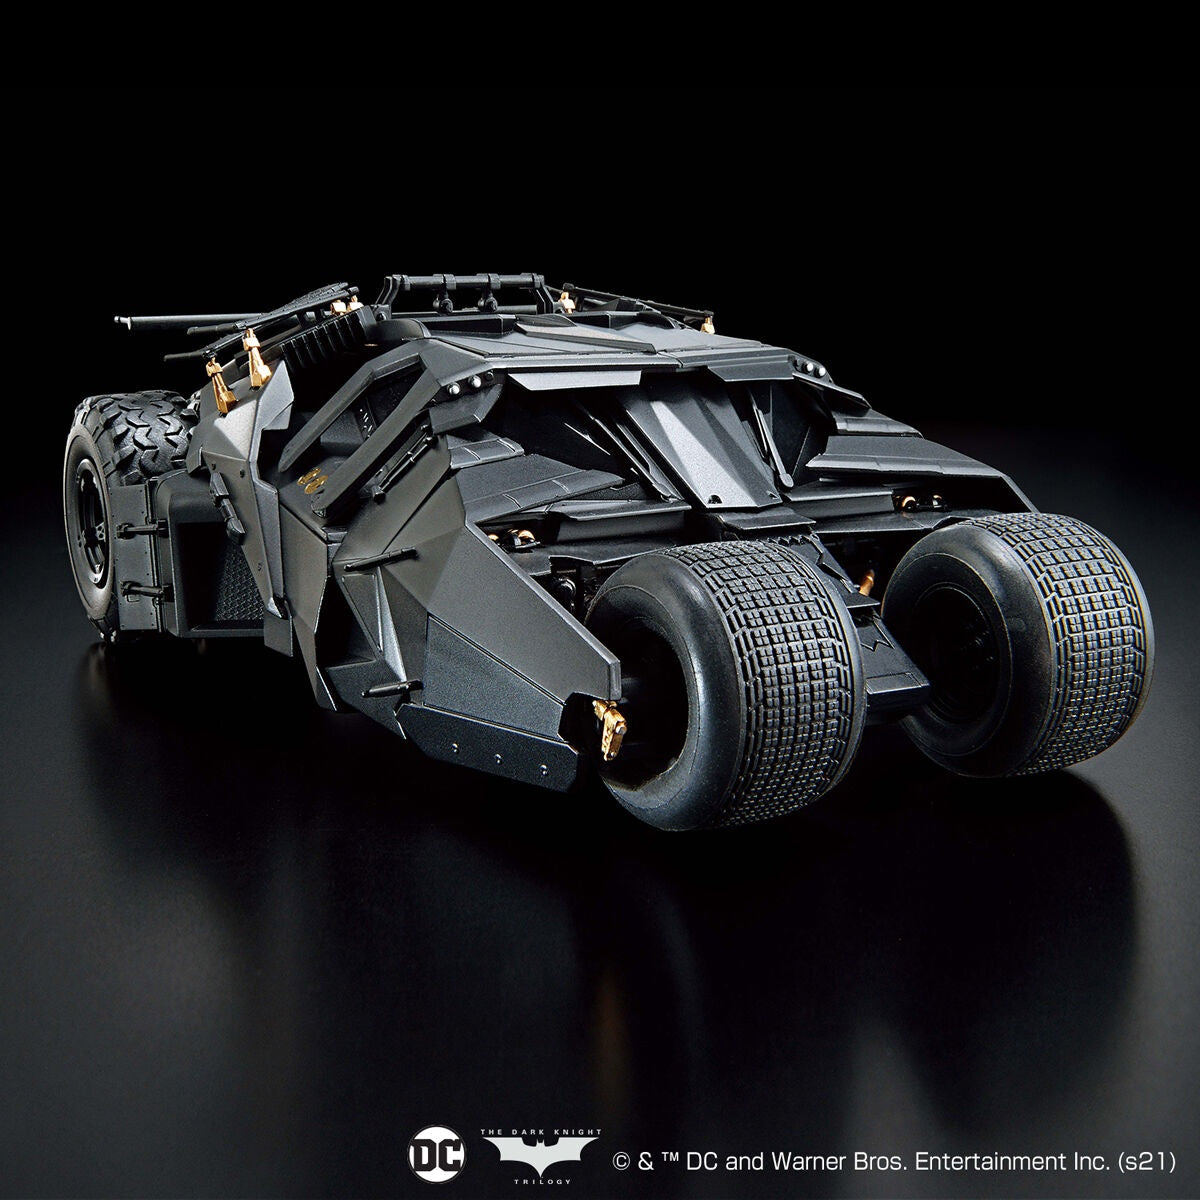 1:35 Batmobile (Batman Begins Ver) @ Impulse Hobbies